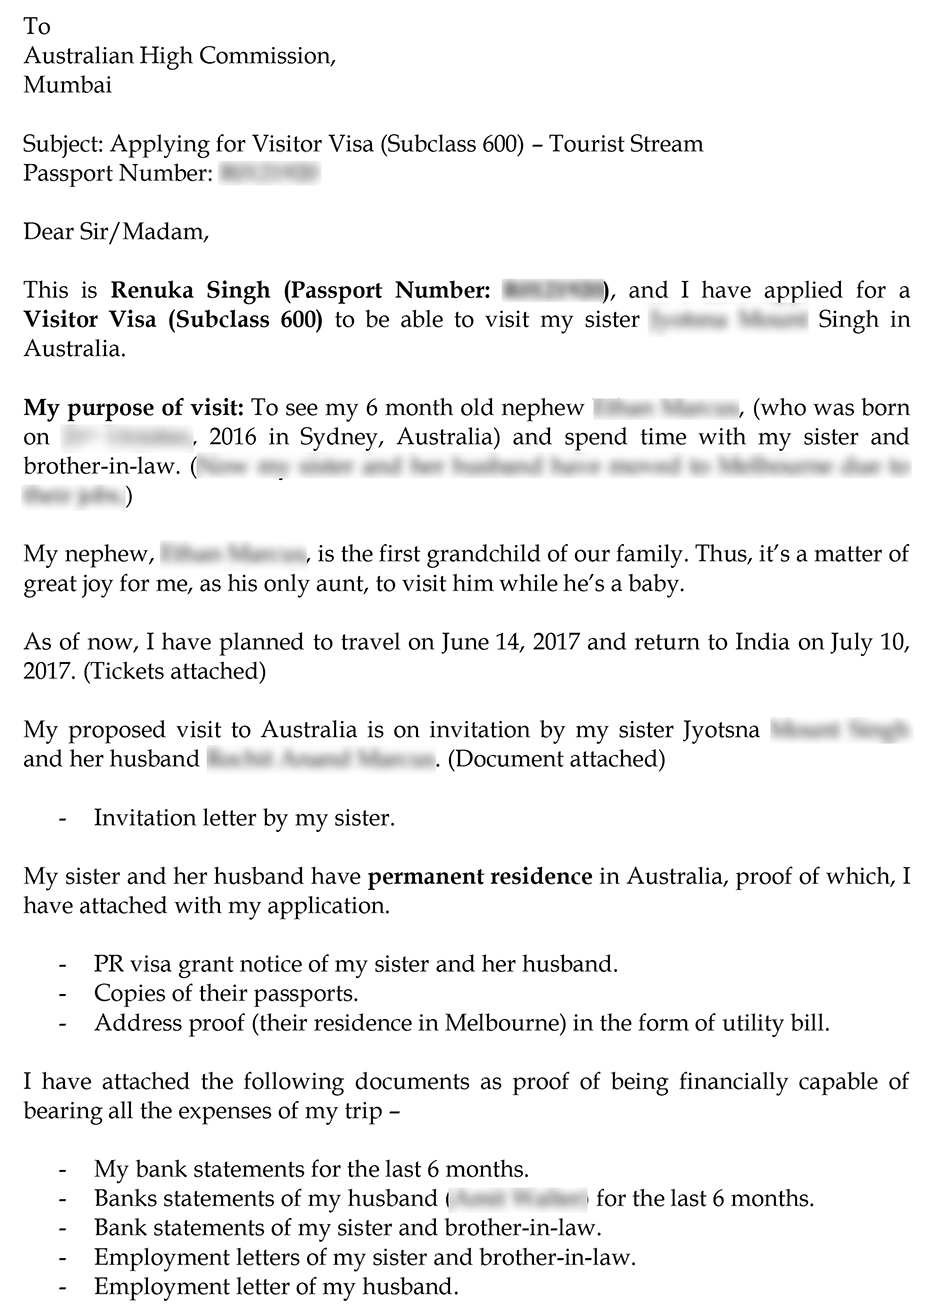 cover letter for australia visa application